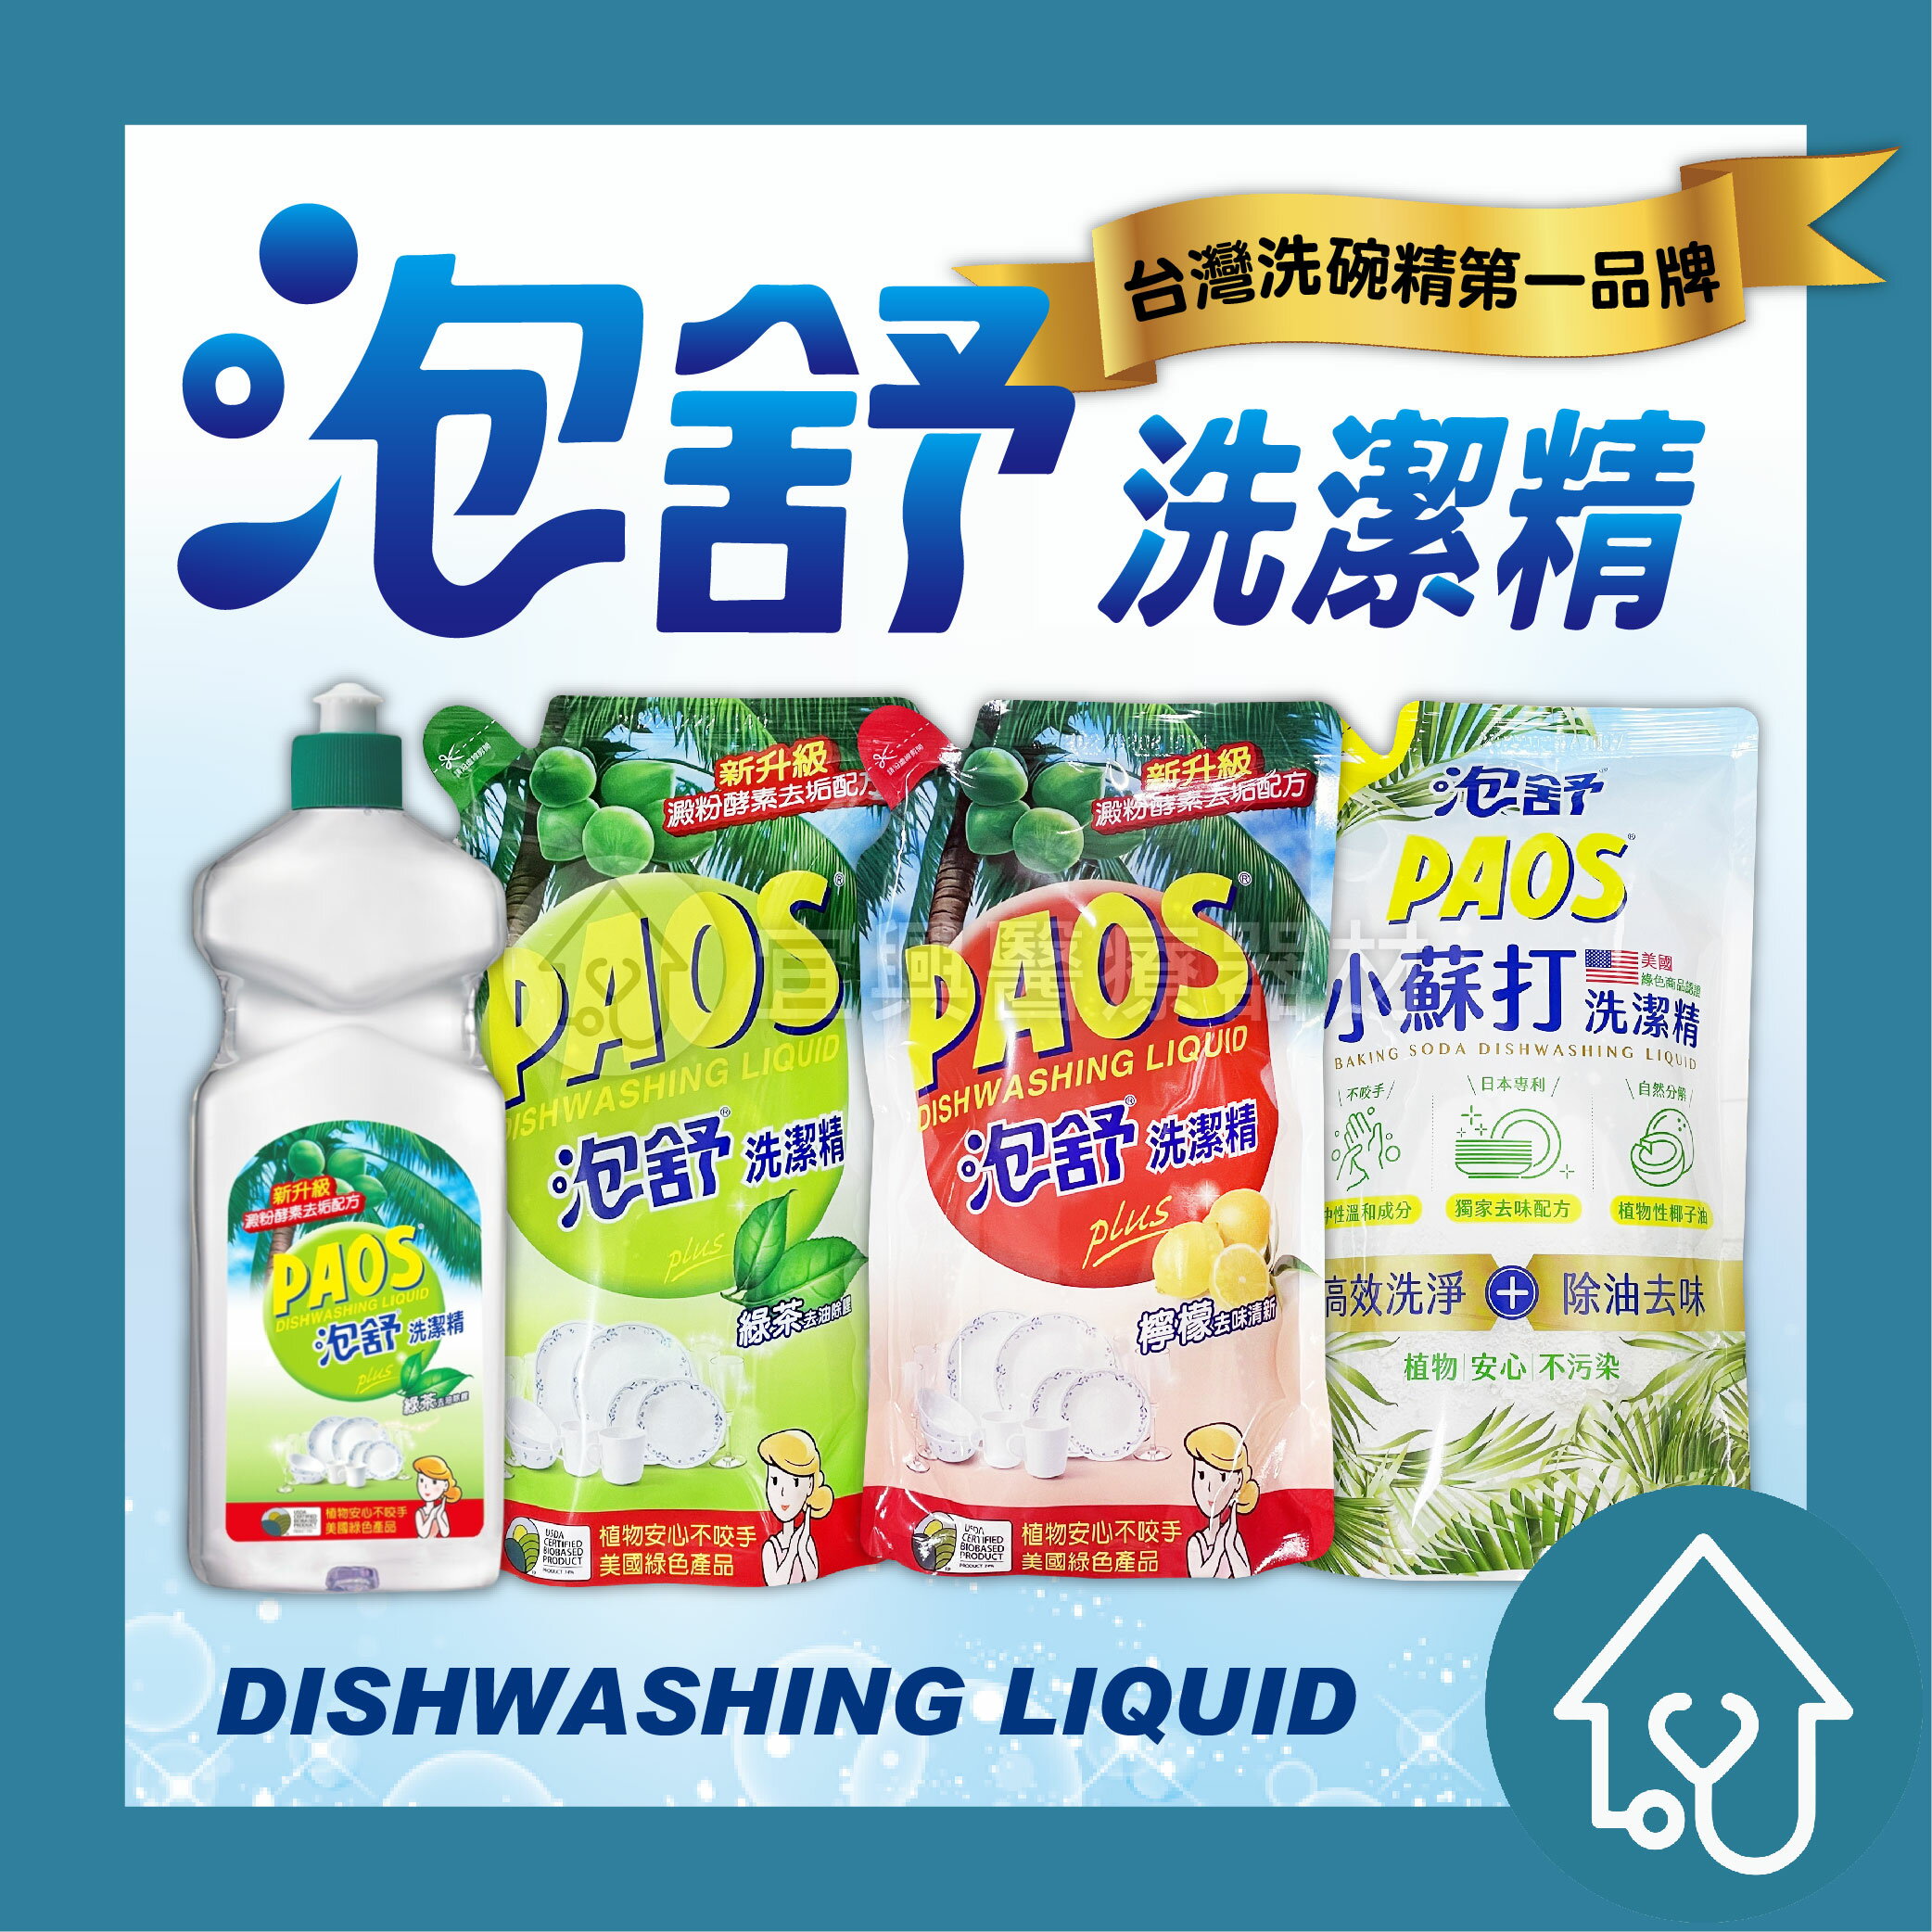 泡舒 洗潔精 補充包 800g 綠茶 檸檬 小蘇打 植物安心不咬手 美國綠色產品